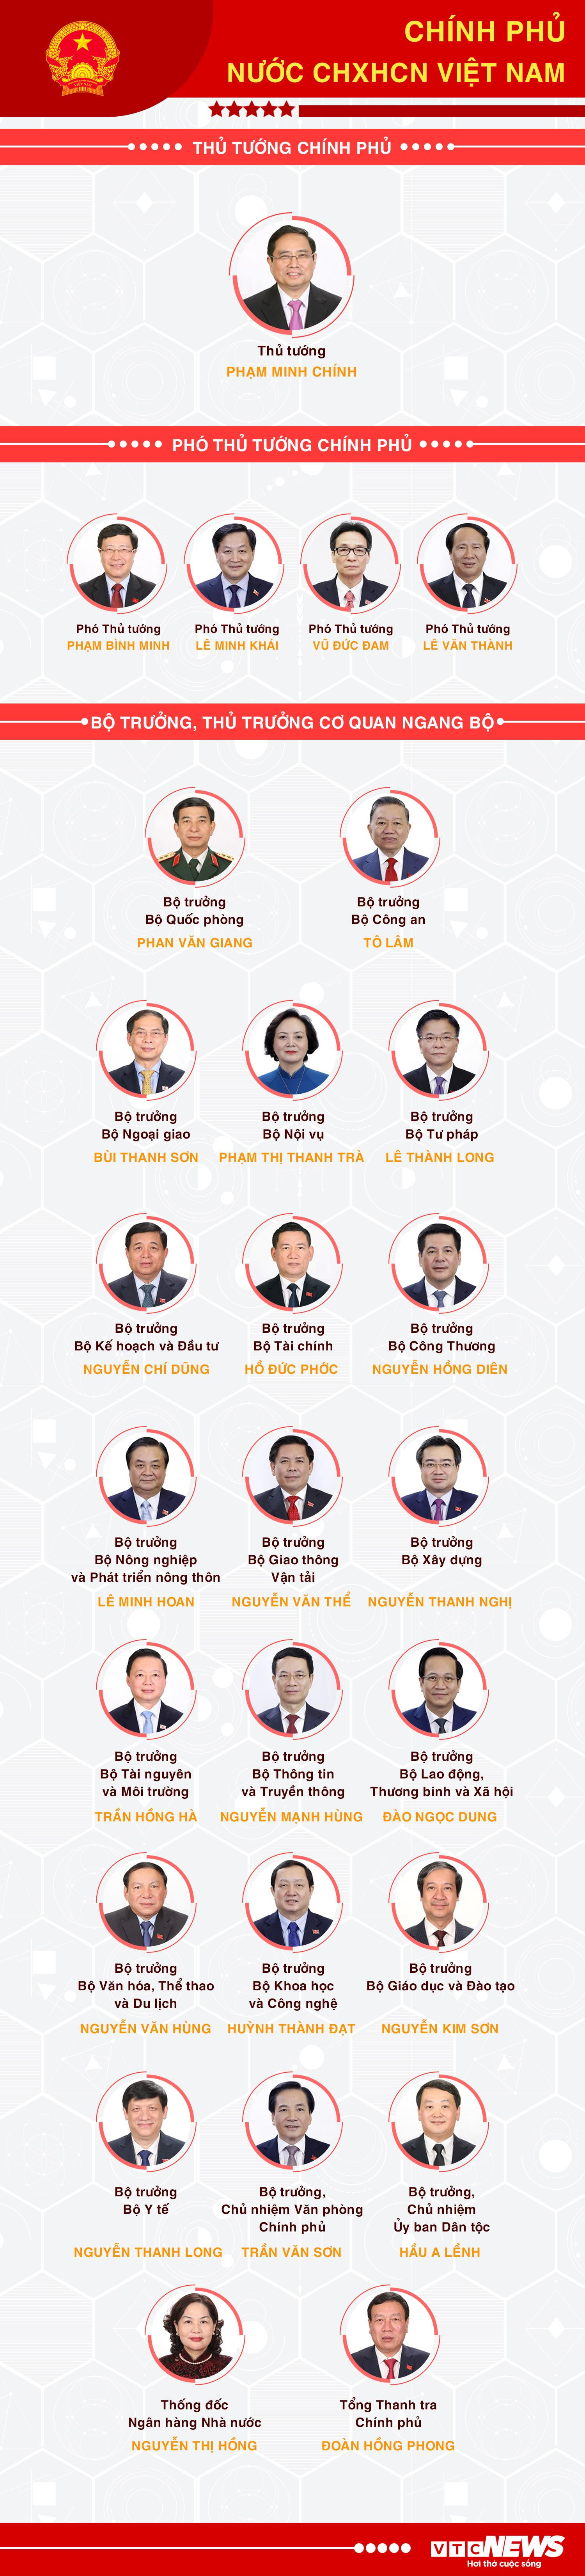 Infographic: Danh sách 27 thành viên Chính phủ nhiệm kỳ 2021-2026 - 1